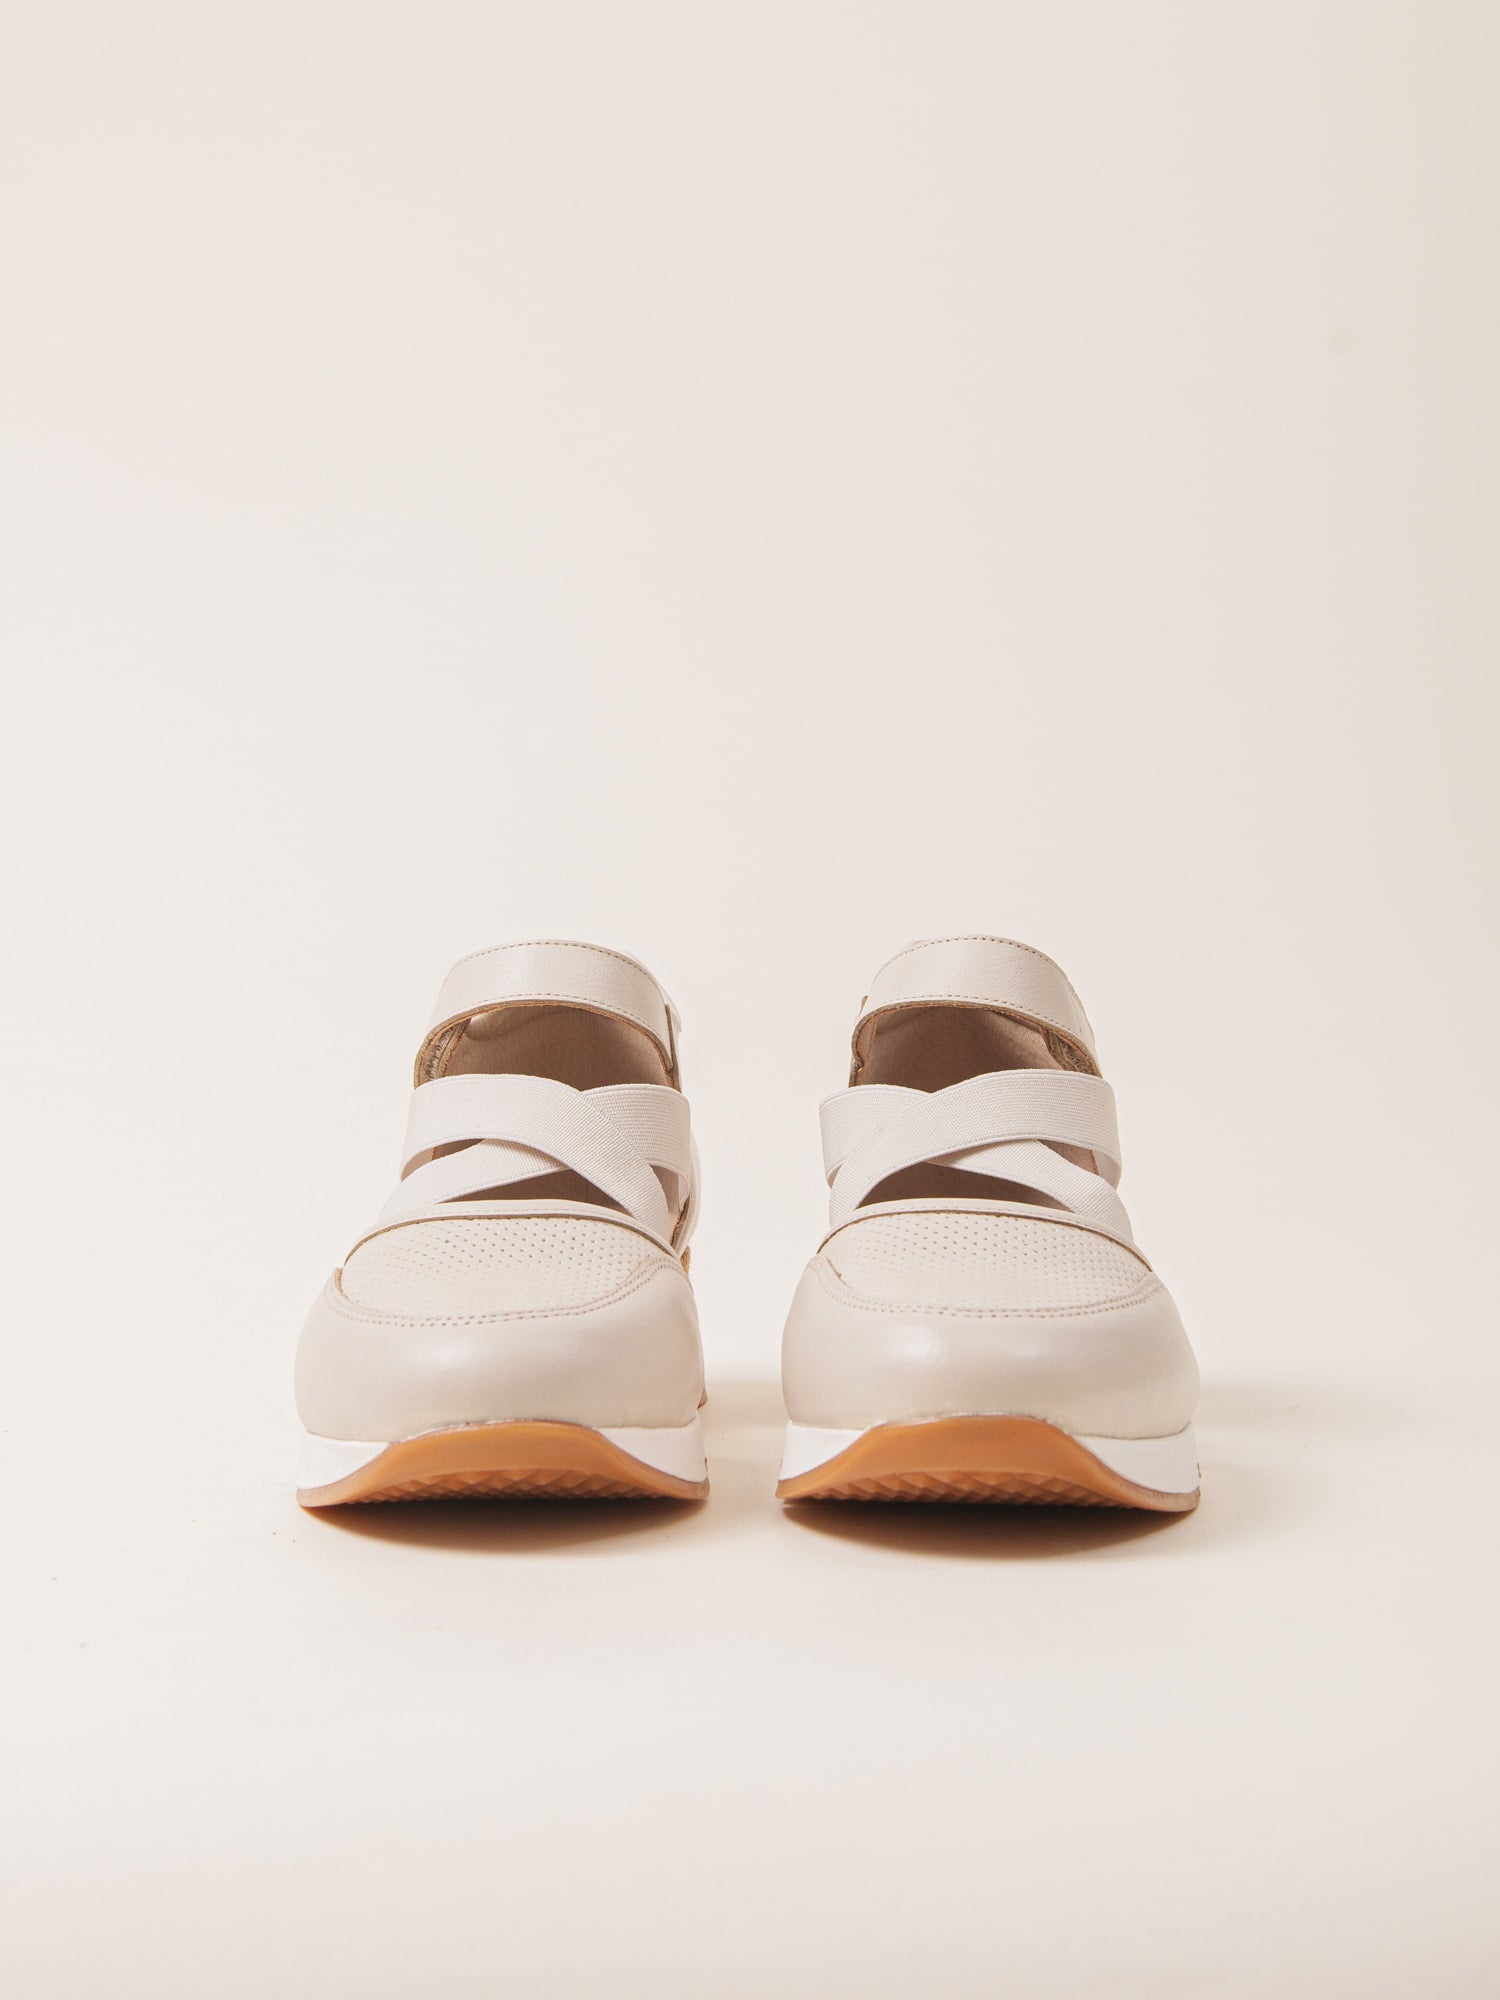 Sandalia deportiva para mujer ligeras y cómodas ideal para uso diario.